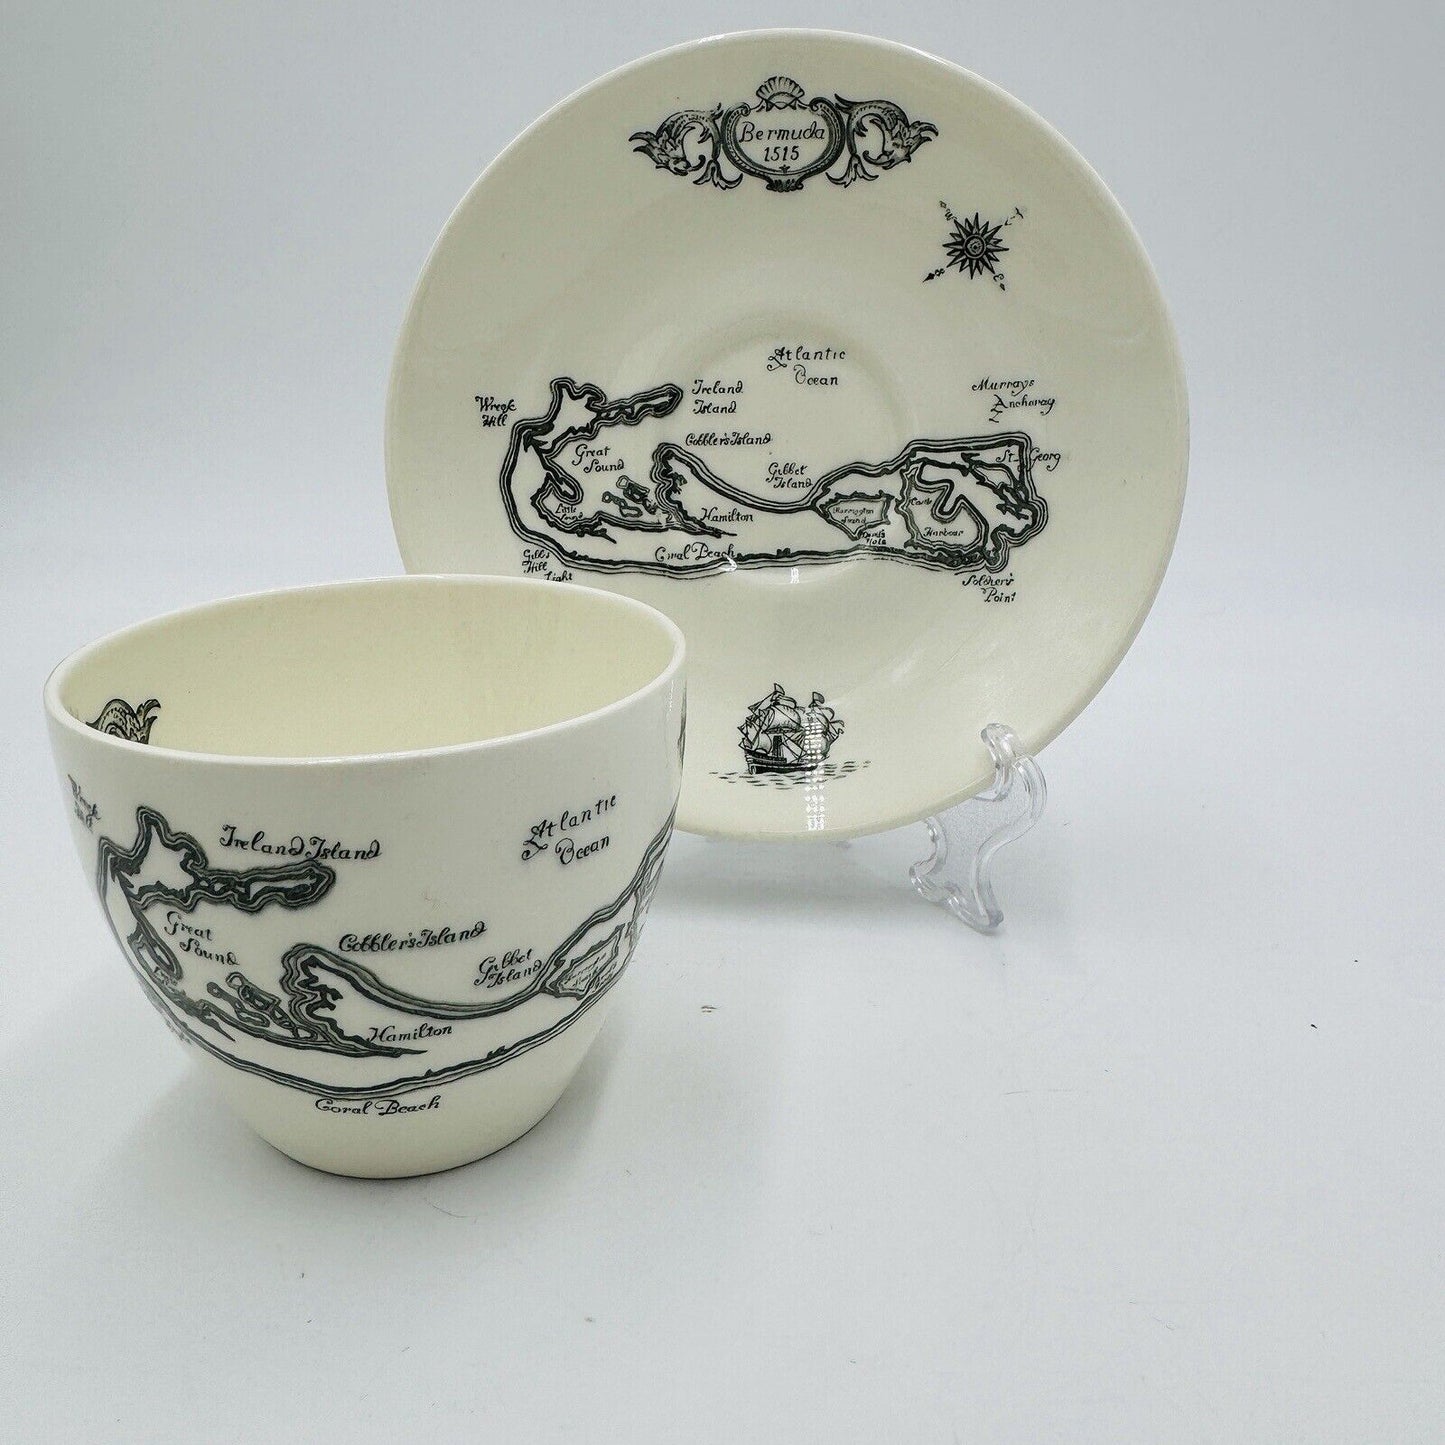 Vintage Wedgwood Bermuda Teacup & Saucer Made for A.S. Cooper & Sons Porcelain